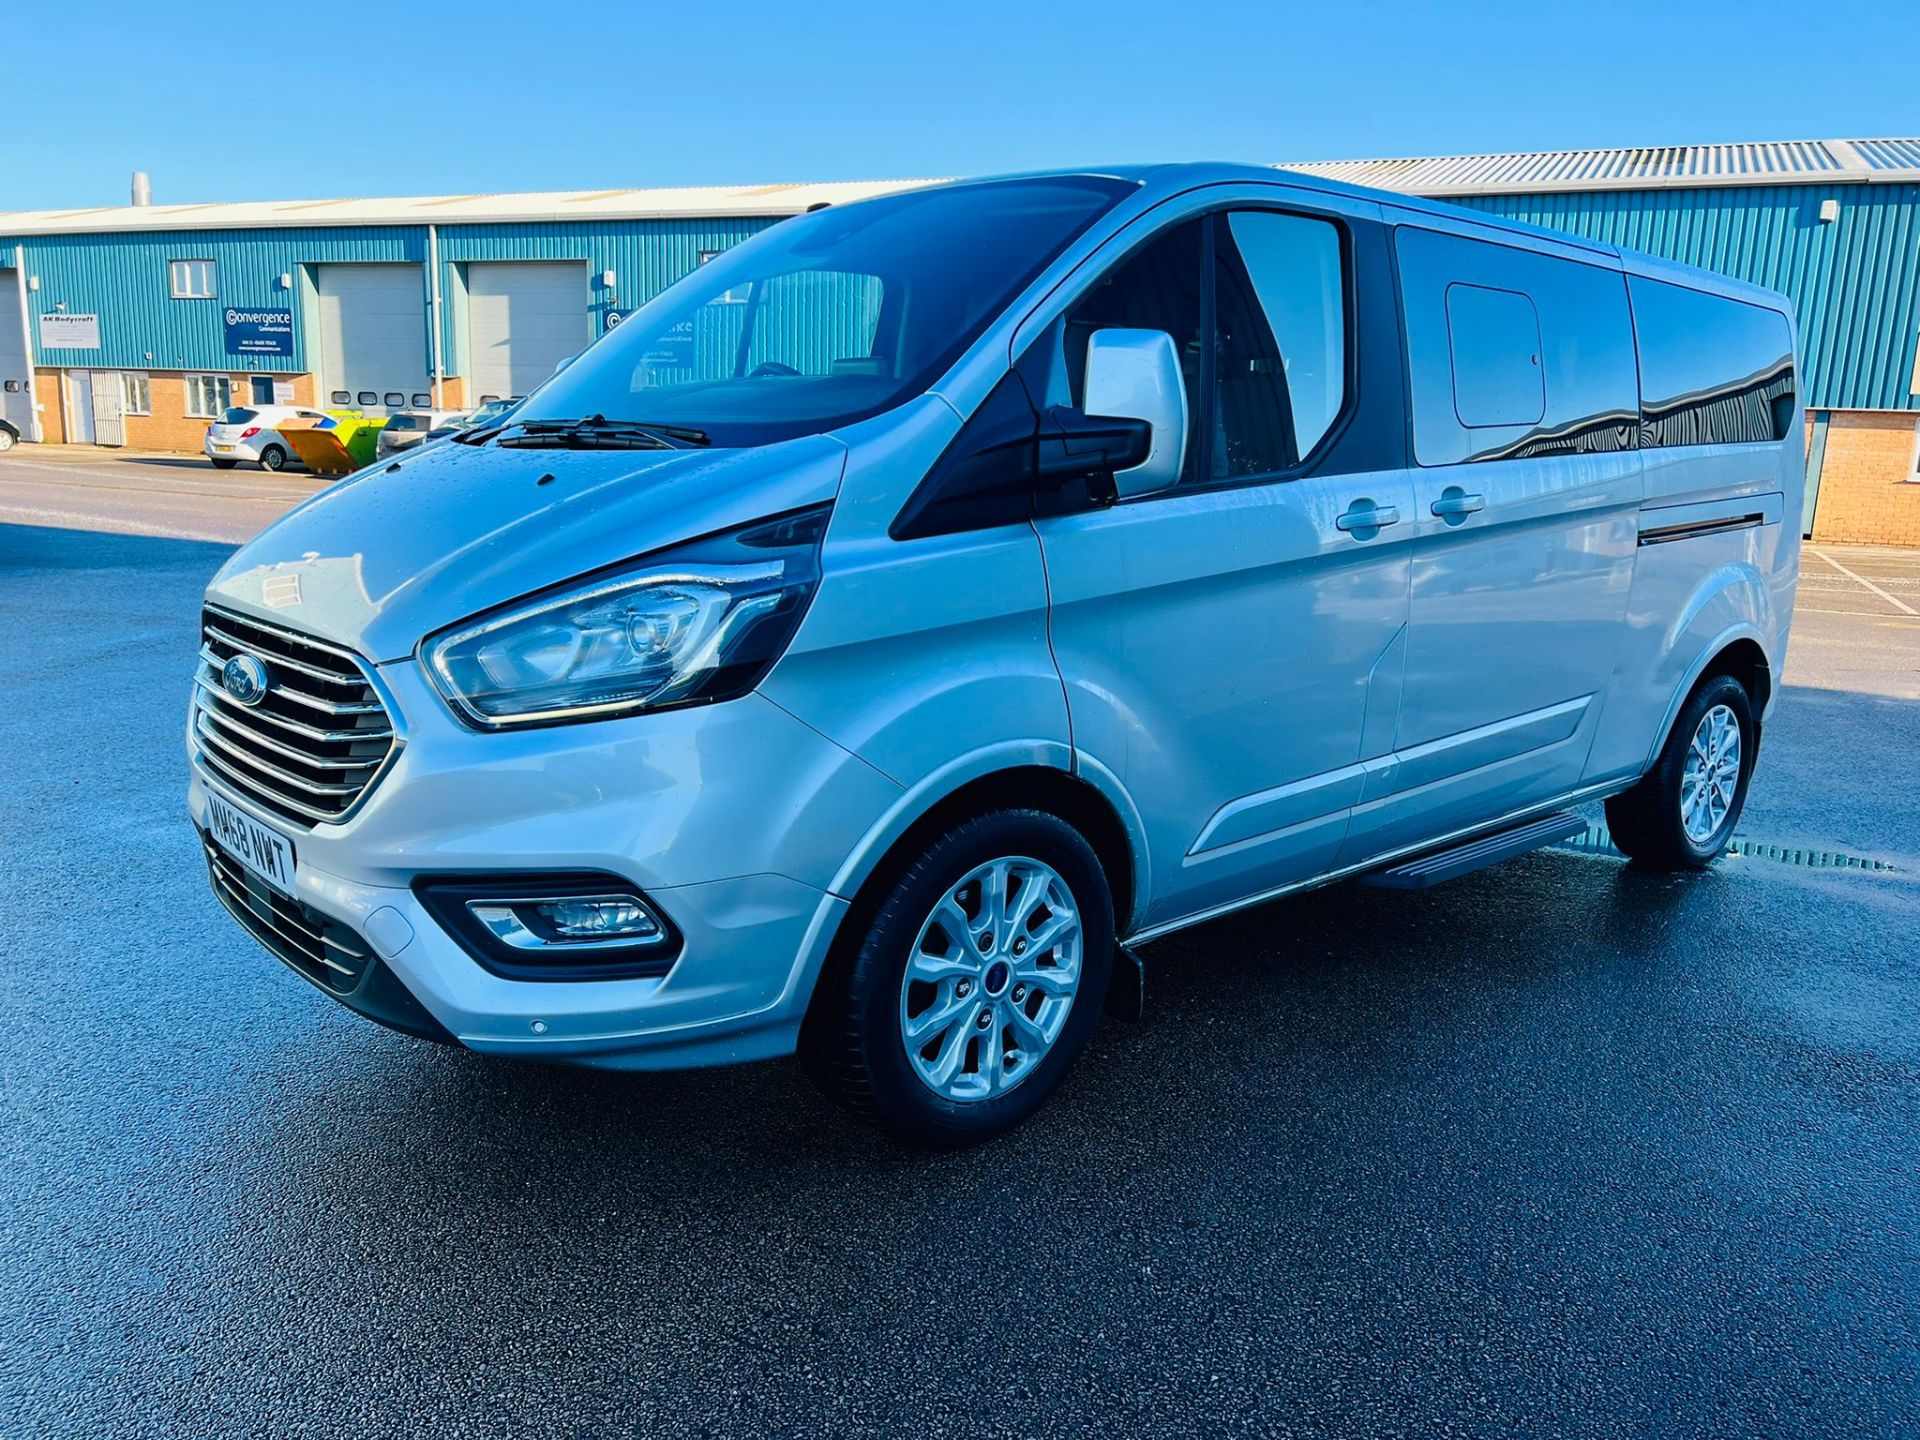 (Reserve Met) Ford Transit Custom 310 130 2.0 Tdci Titanium 9 Seater MiniBus 2019 Model - Air Con - - Image 2 of 36